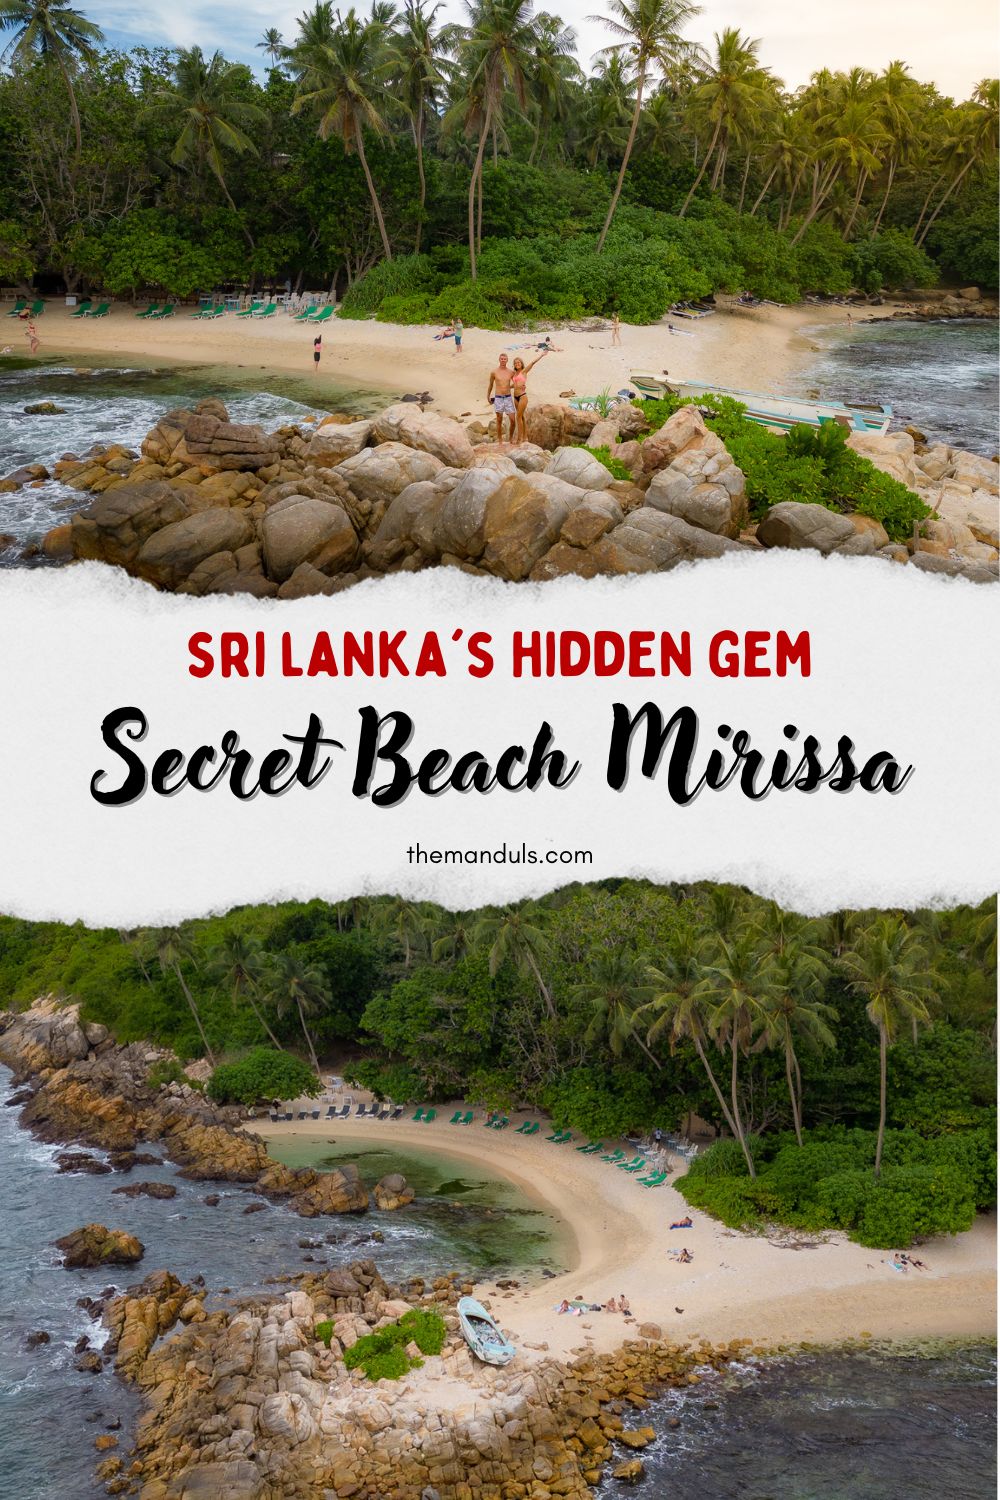 Secret Beach Mirissa, Secret Beach Mirissa Sri Lanka, Secret Beach Mirissa in Sri Lanka, Best Beaches Sri Lanka, The best beach in Mirissa, Mirissa travel guide